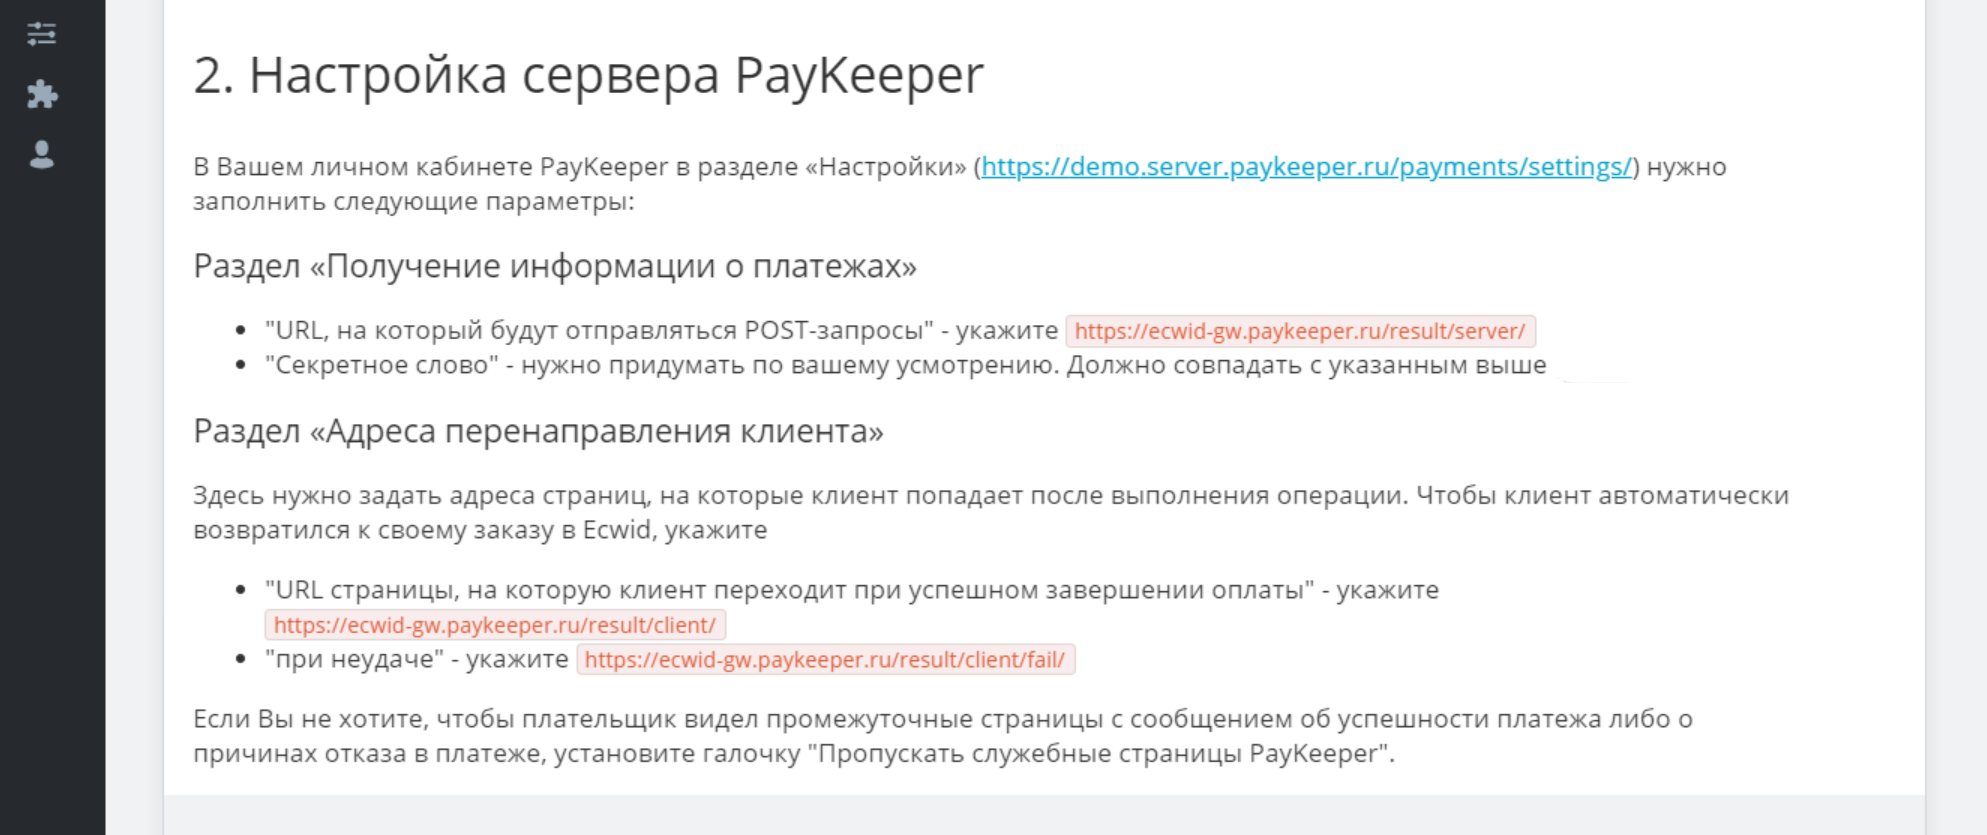 Рис 2. Краткая инструкция по настройке личного кабинета PayKeeper.